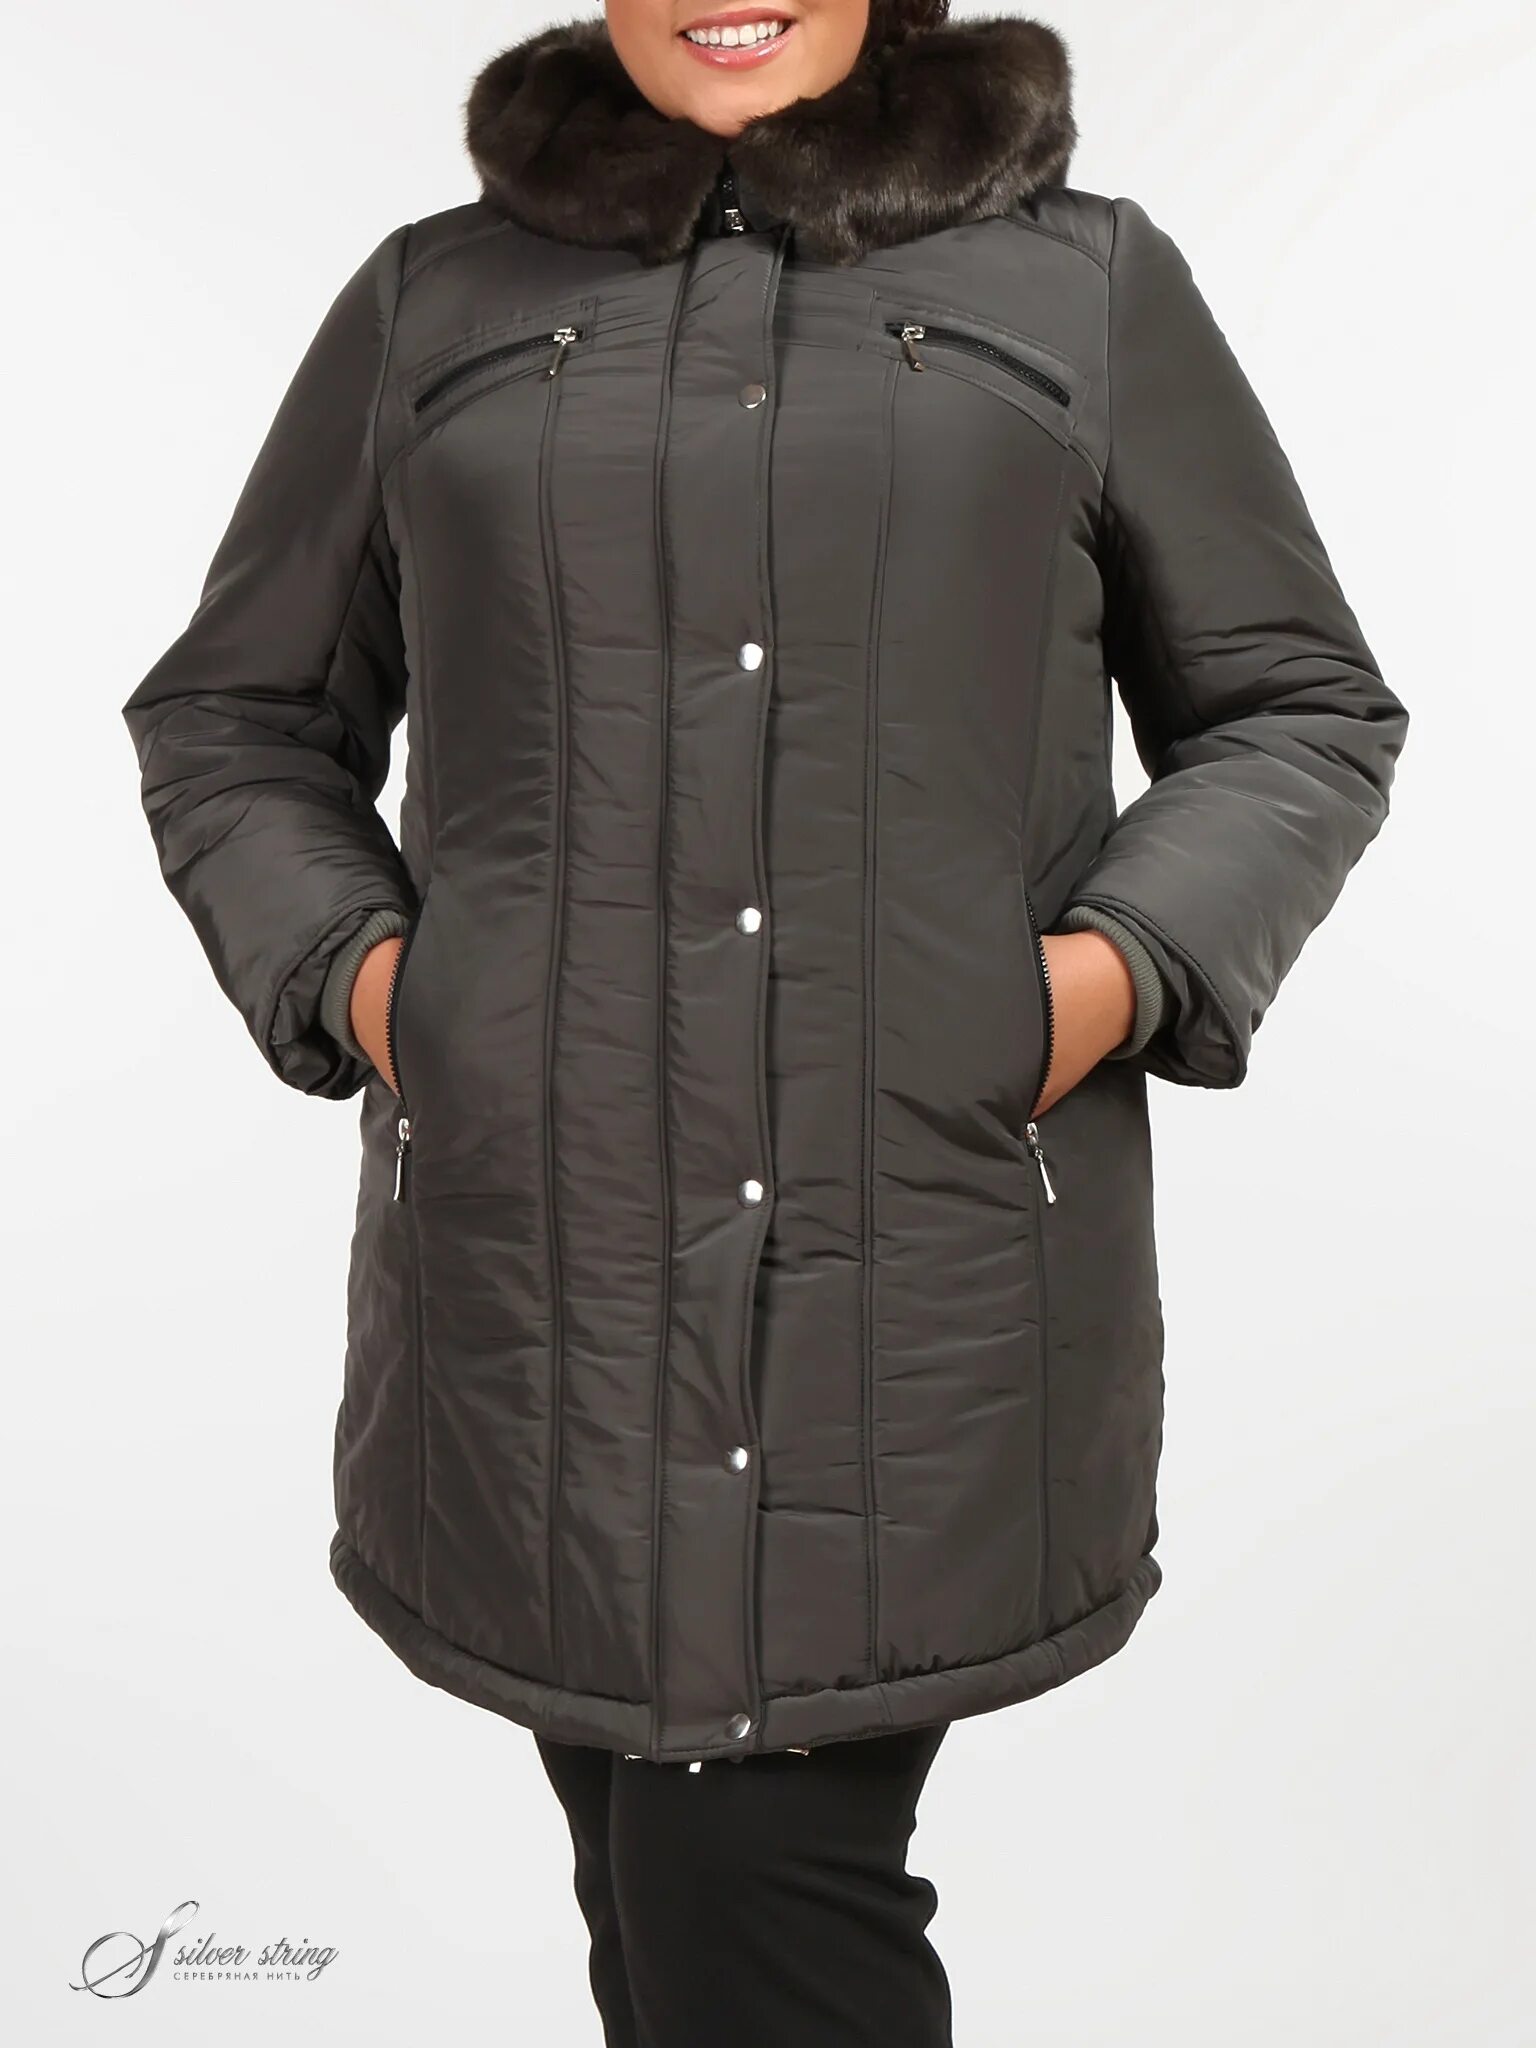 Куртки больших размеров недорого. Куртки женские зимние Шери Вебер 52 размер. Mishel утепленная куртка 70 размер. Mishel утепленная куртка 60 размер. Mishel утепленная куртка 56 размер.